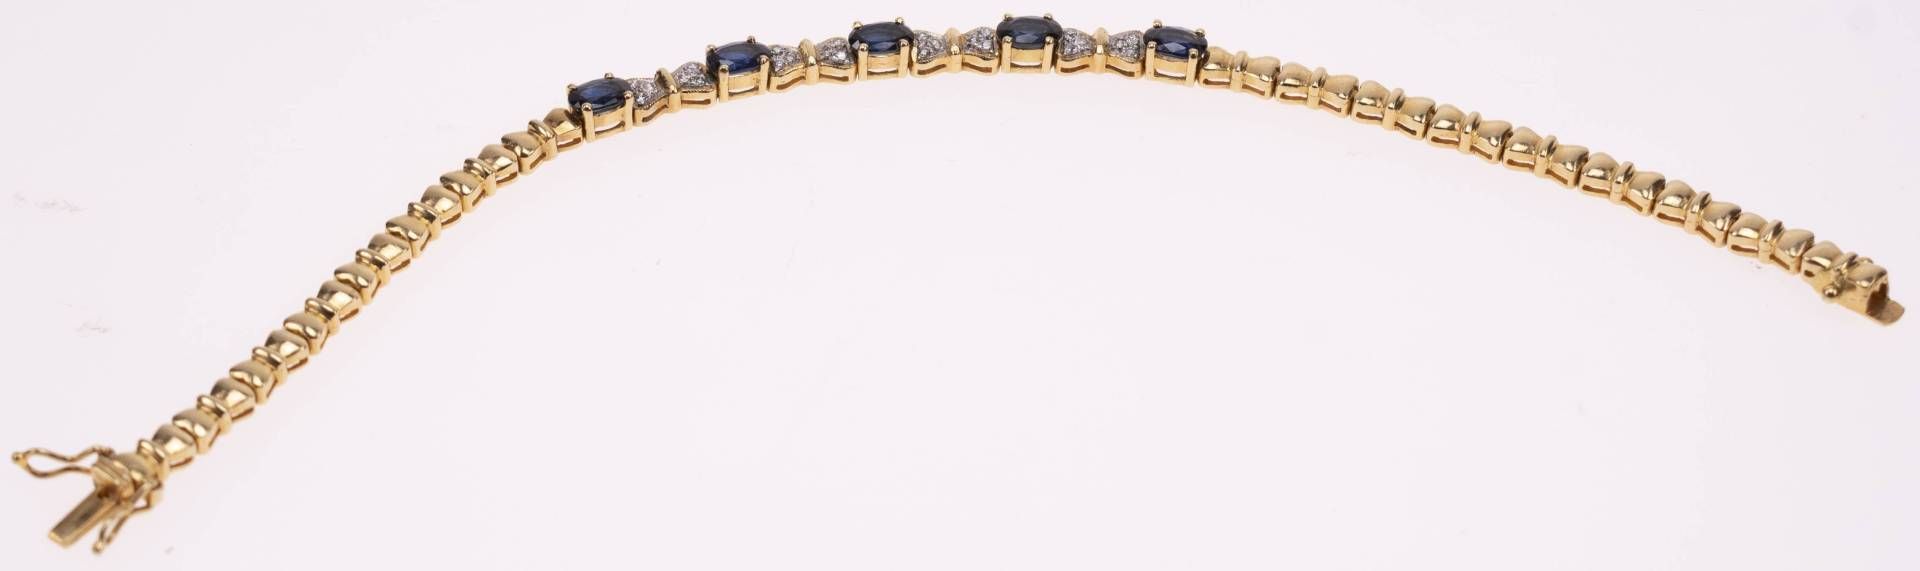 Saphir Diamanten Armband, 750 Gelbgold/18K, 24 Diamanten zus. ca. 0,18ct, 5 Saphire ca. 3,4ct, Länge - Bild 4 aus 4